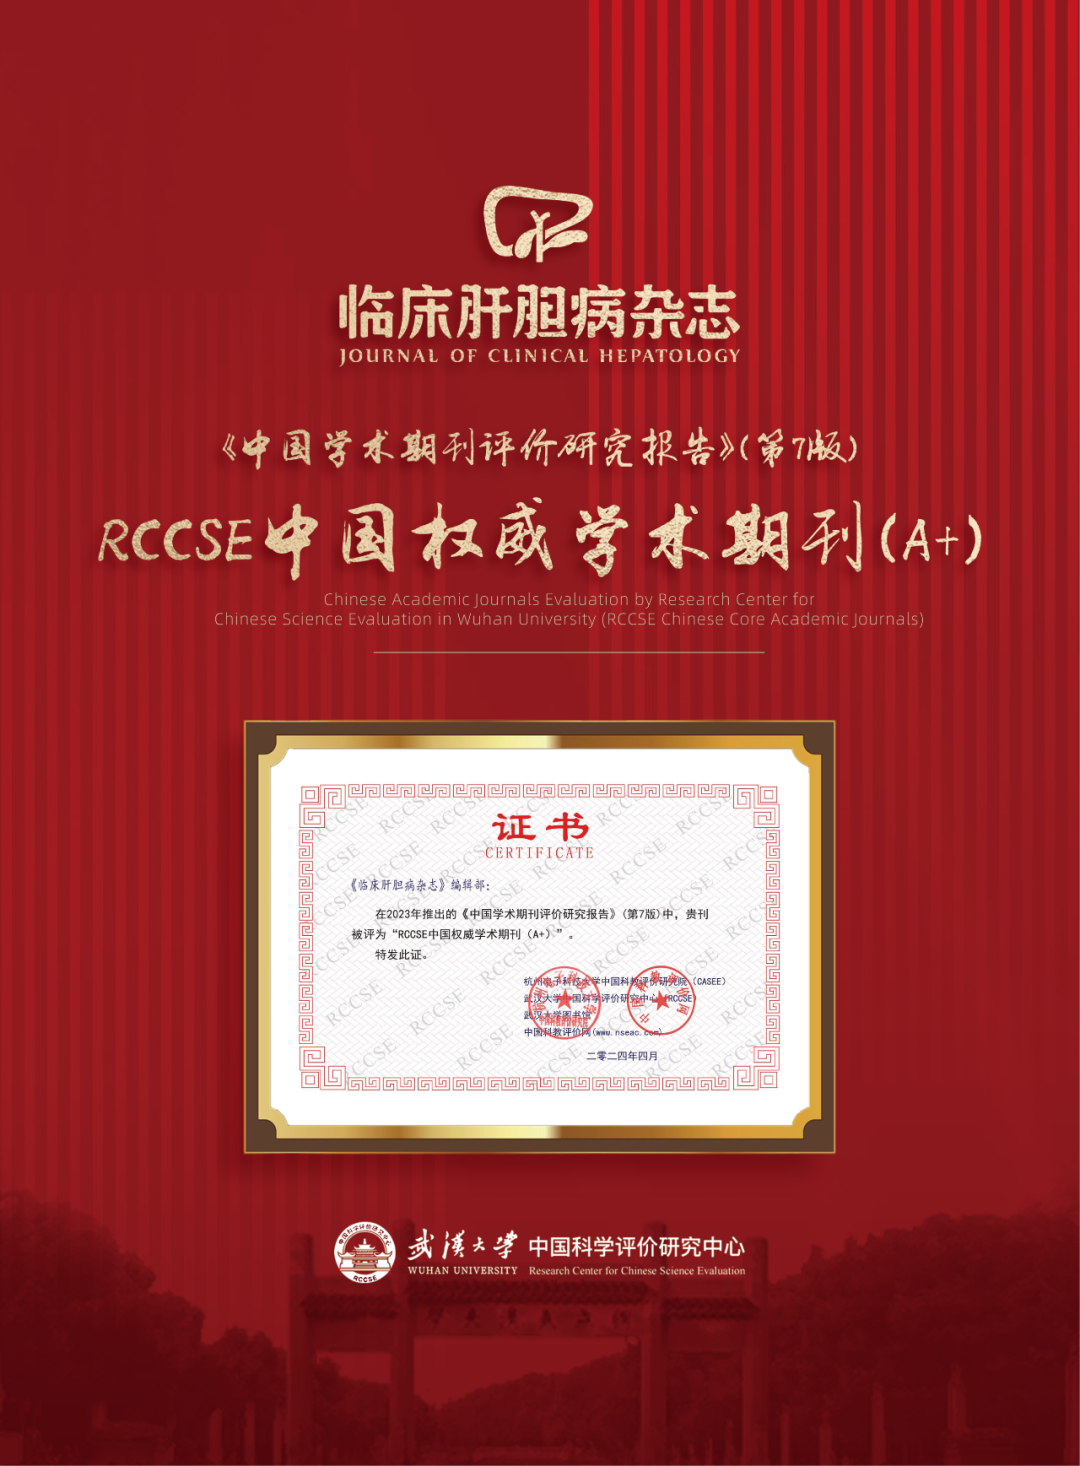 《临床肝胆病杂志》获评“RCCSE中国权威<font color="red">学术期刊</font>（A+）”